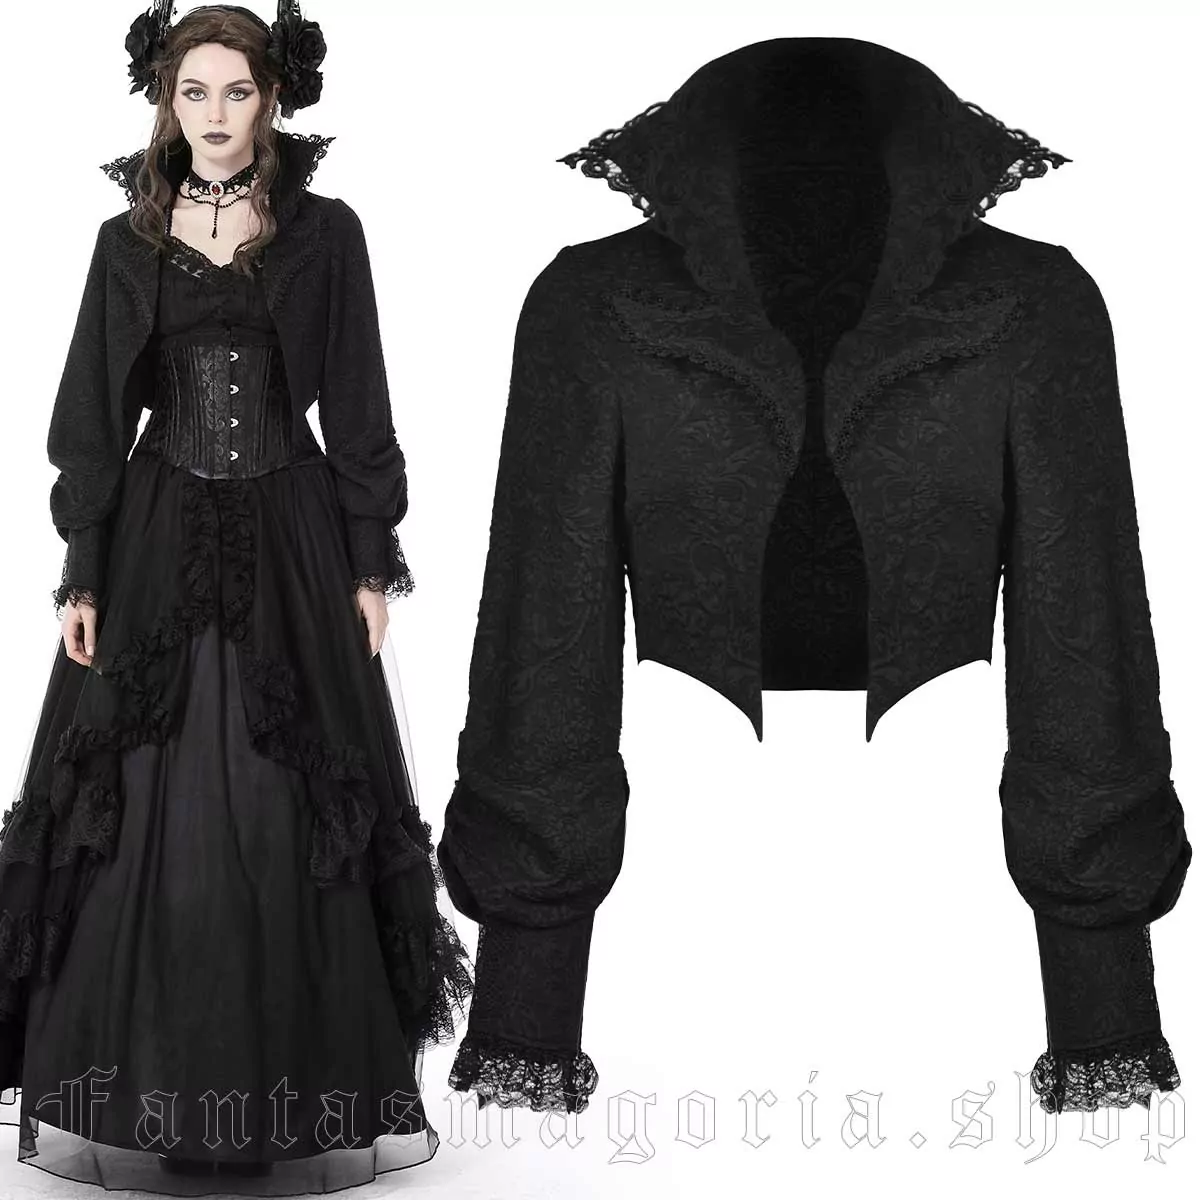 Gothic Court Jacket - Dark in Love | Fantasmagoria.shop